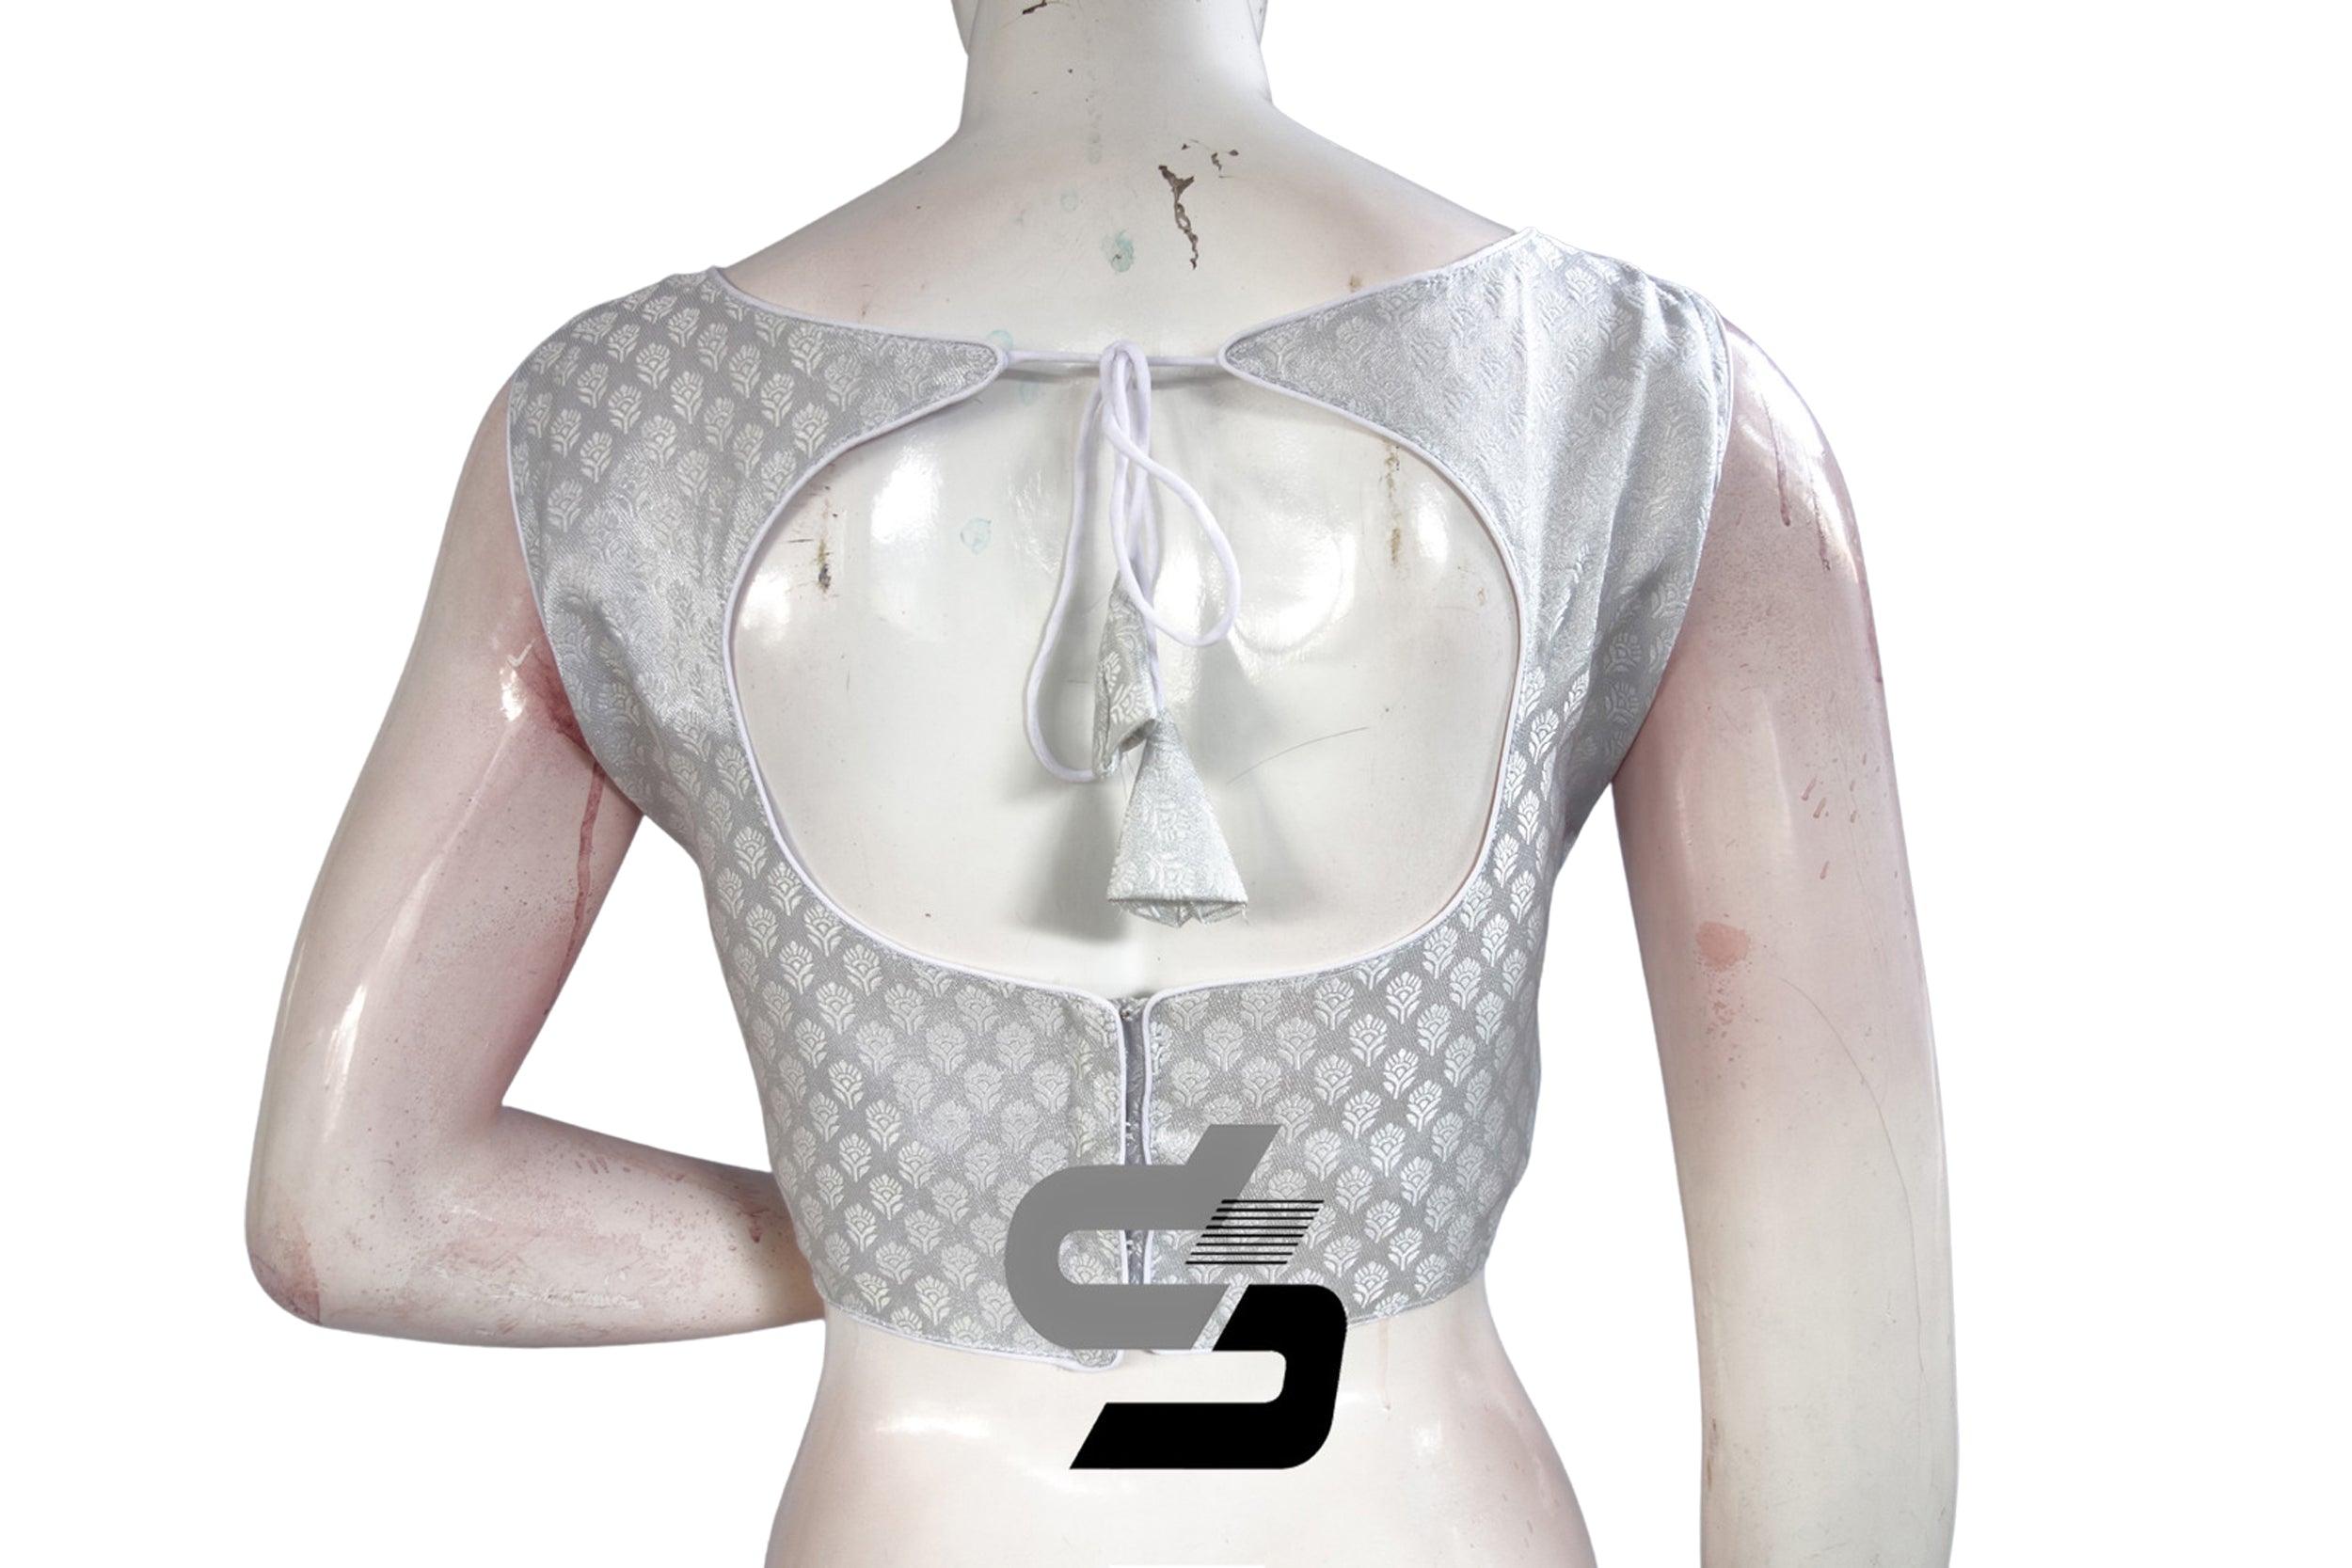 Readymade Saree Blouse, Designer Silver Brocade Sari Blouse, Silver Saree  Top | eBay